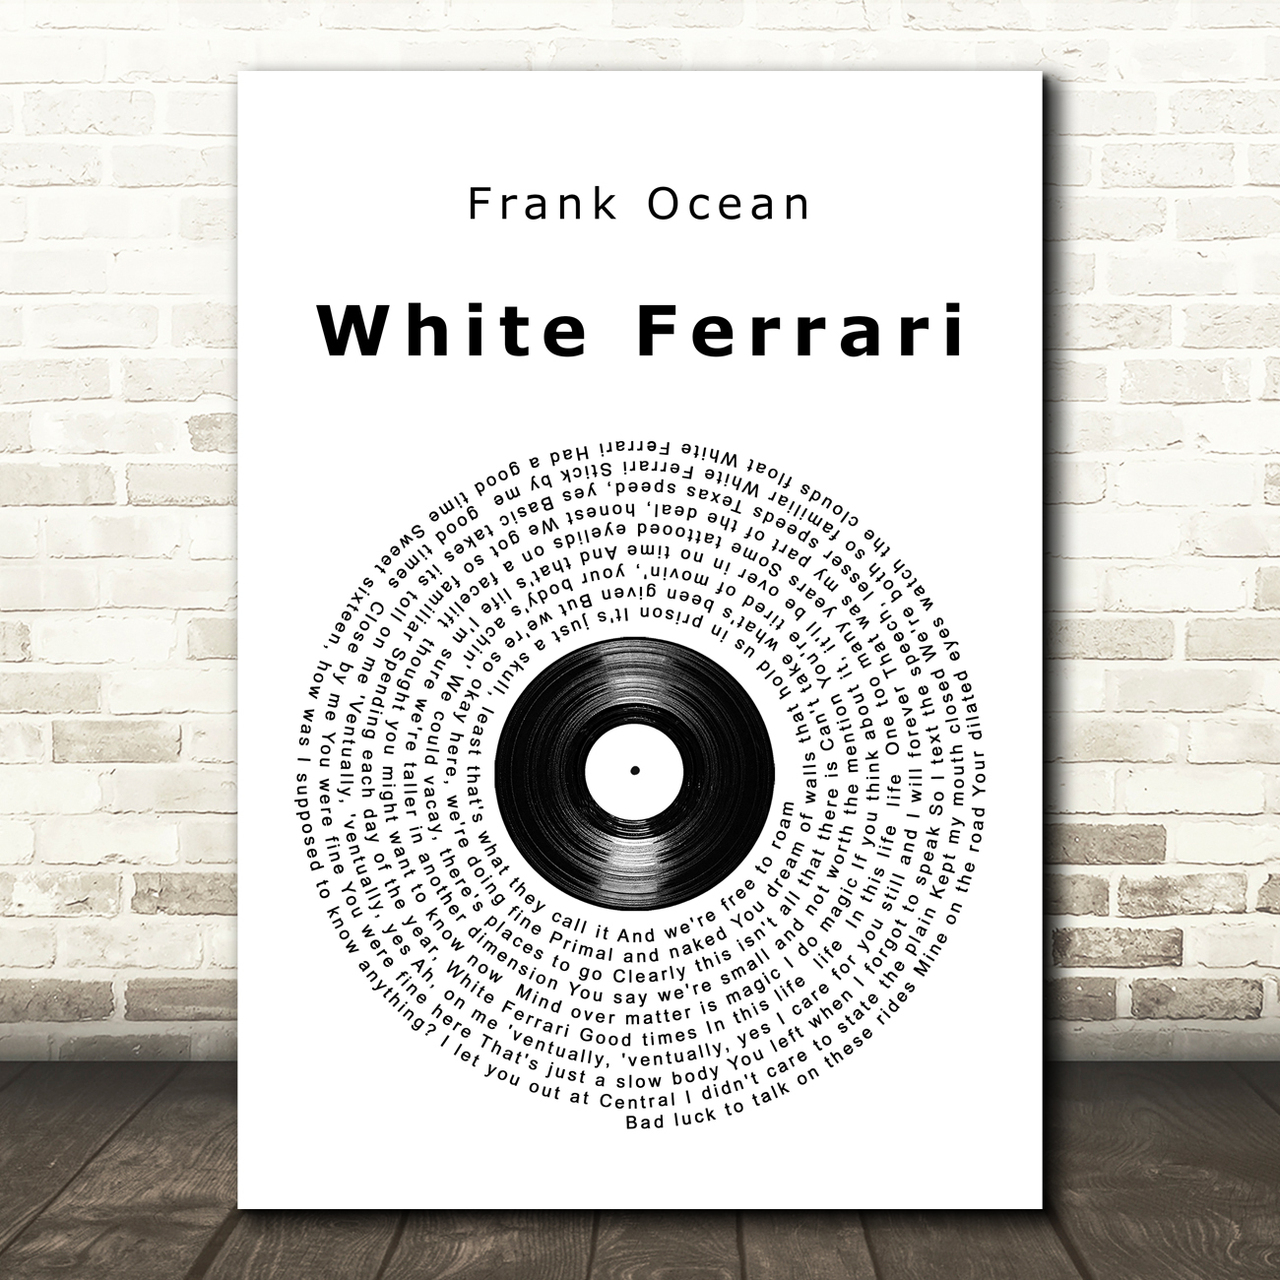 Frank Ocean White Ferrari Vinyl Record Song Lyric Music Art Print